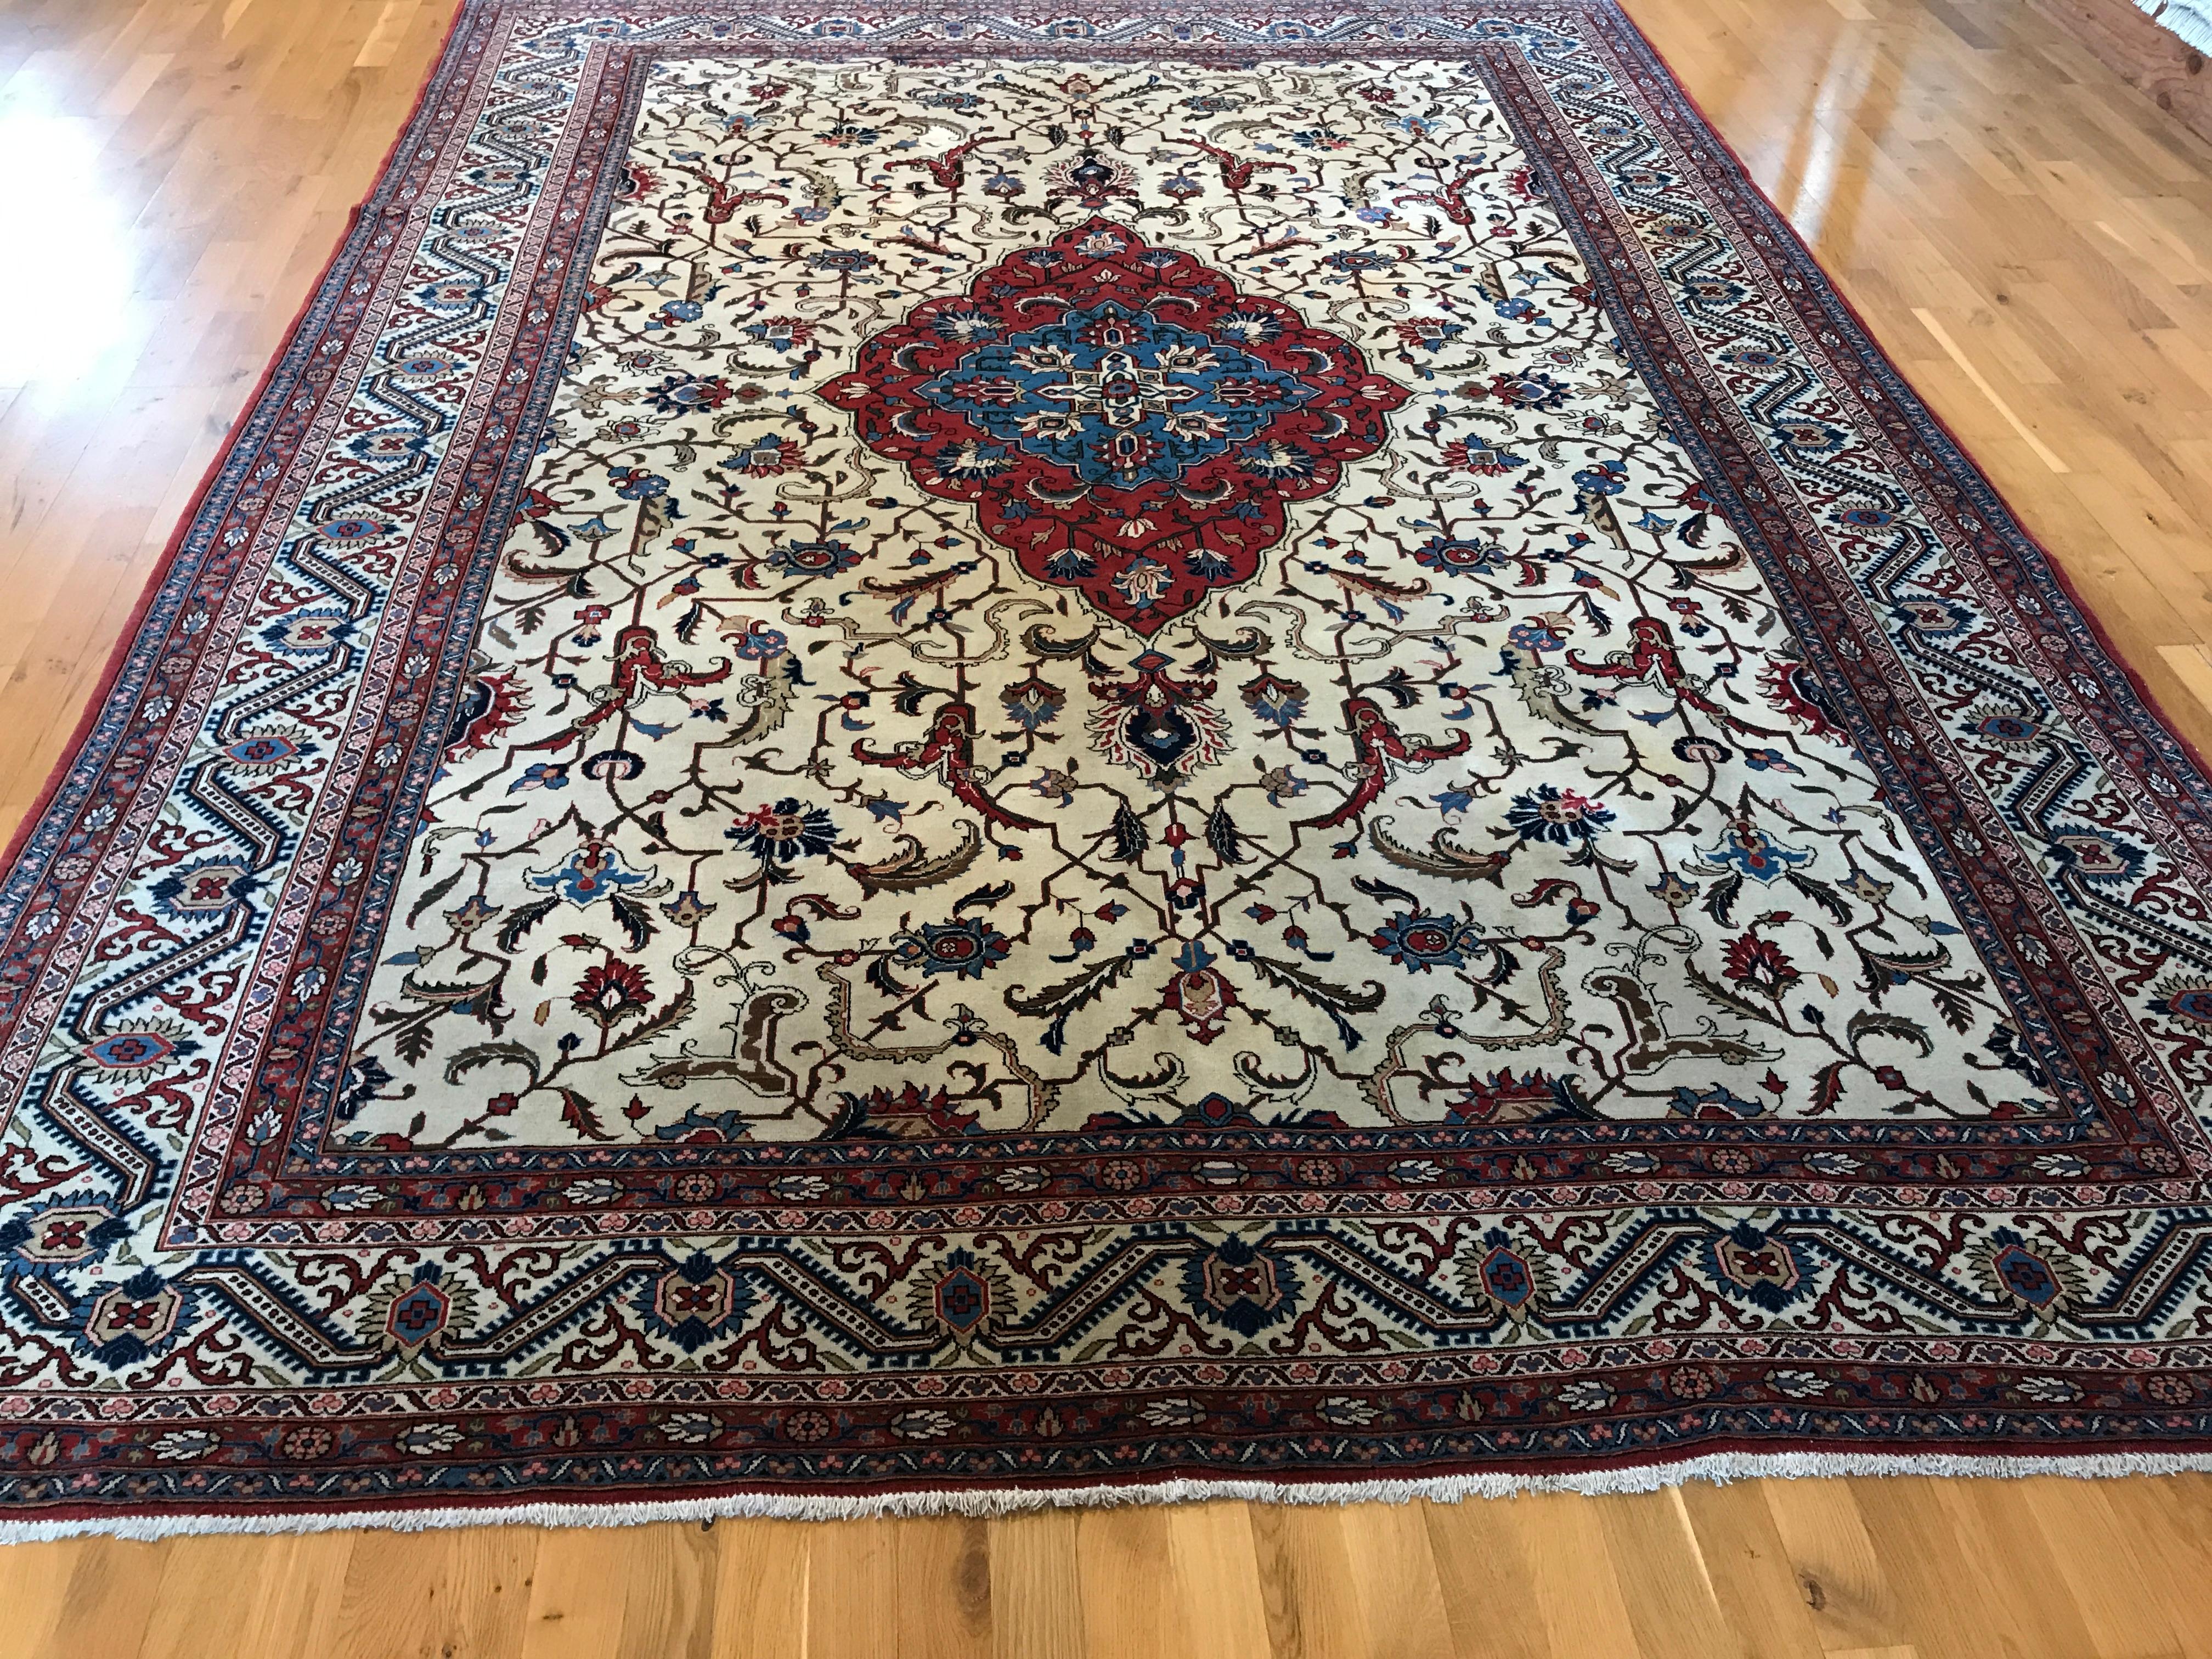 Verströmen Sie Eleganz und Raffinesse mit diesem antiken persischen Trabriz-Teppich. Sein exquisites, aus reiner Wolle gefertigtes Design verleiht jedem Raum eine luxuriöse Note. Entdecken Sie die zeitlose Schönheit dieses Stücks, das den Test der